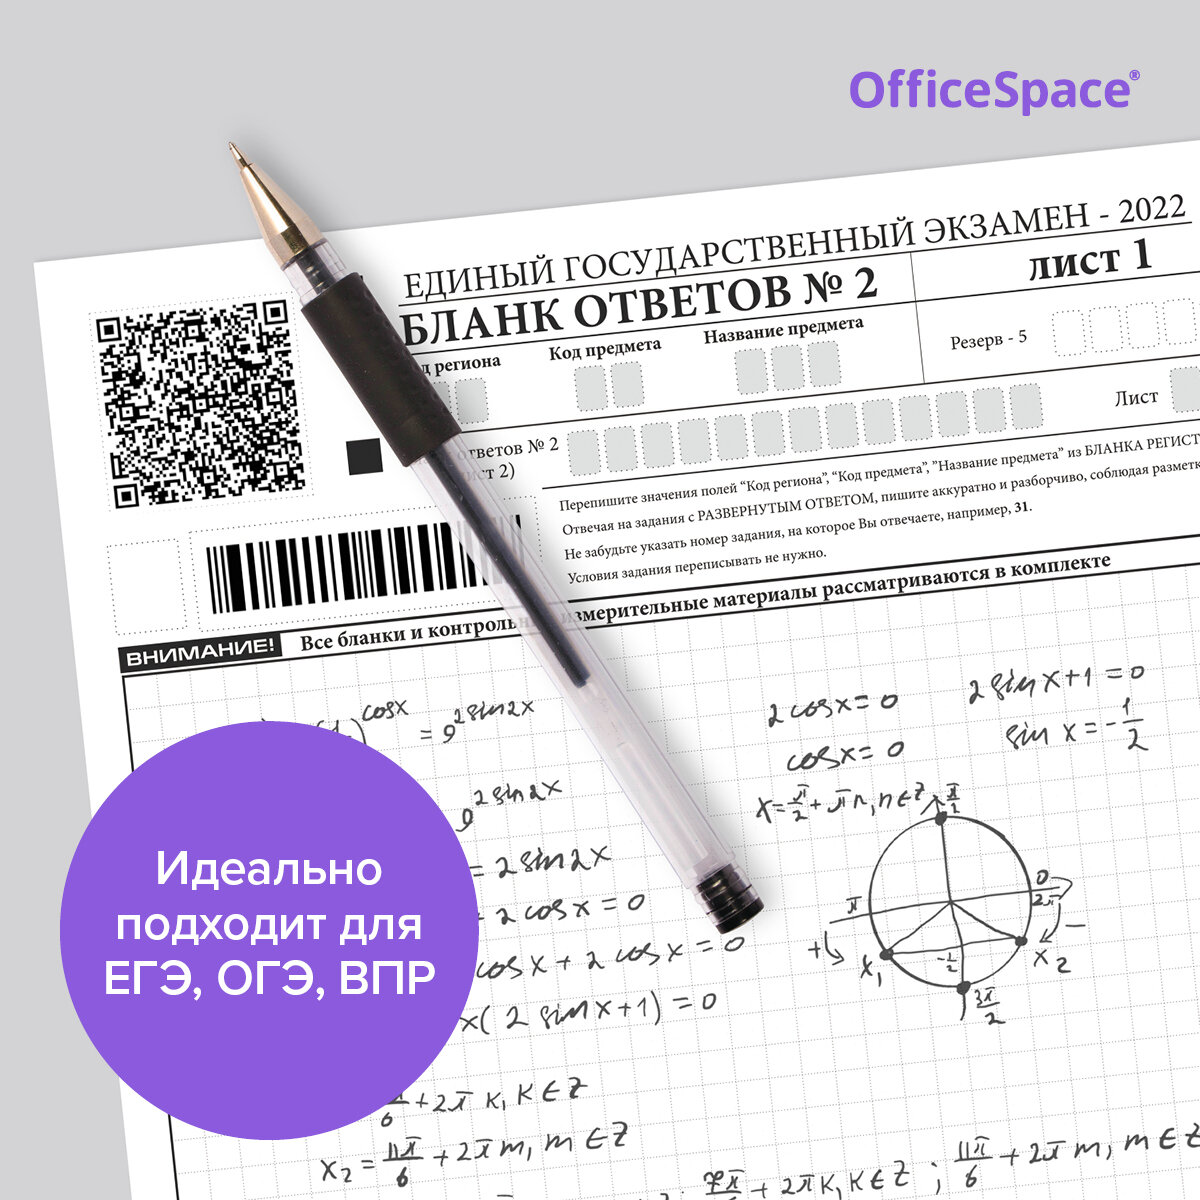 Ручки для школы гелевые черные / Набор ручек для ЕГЭ (ОГЭ) 12 штук, комплект для офиса OfficeSpace с круглым пластиковым корпусом, 0,5 мм / школьные принадлежности и канцтовары